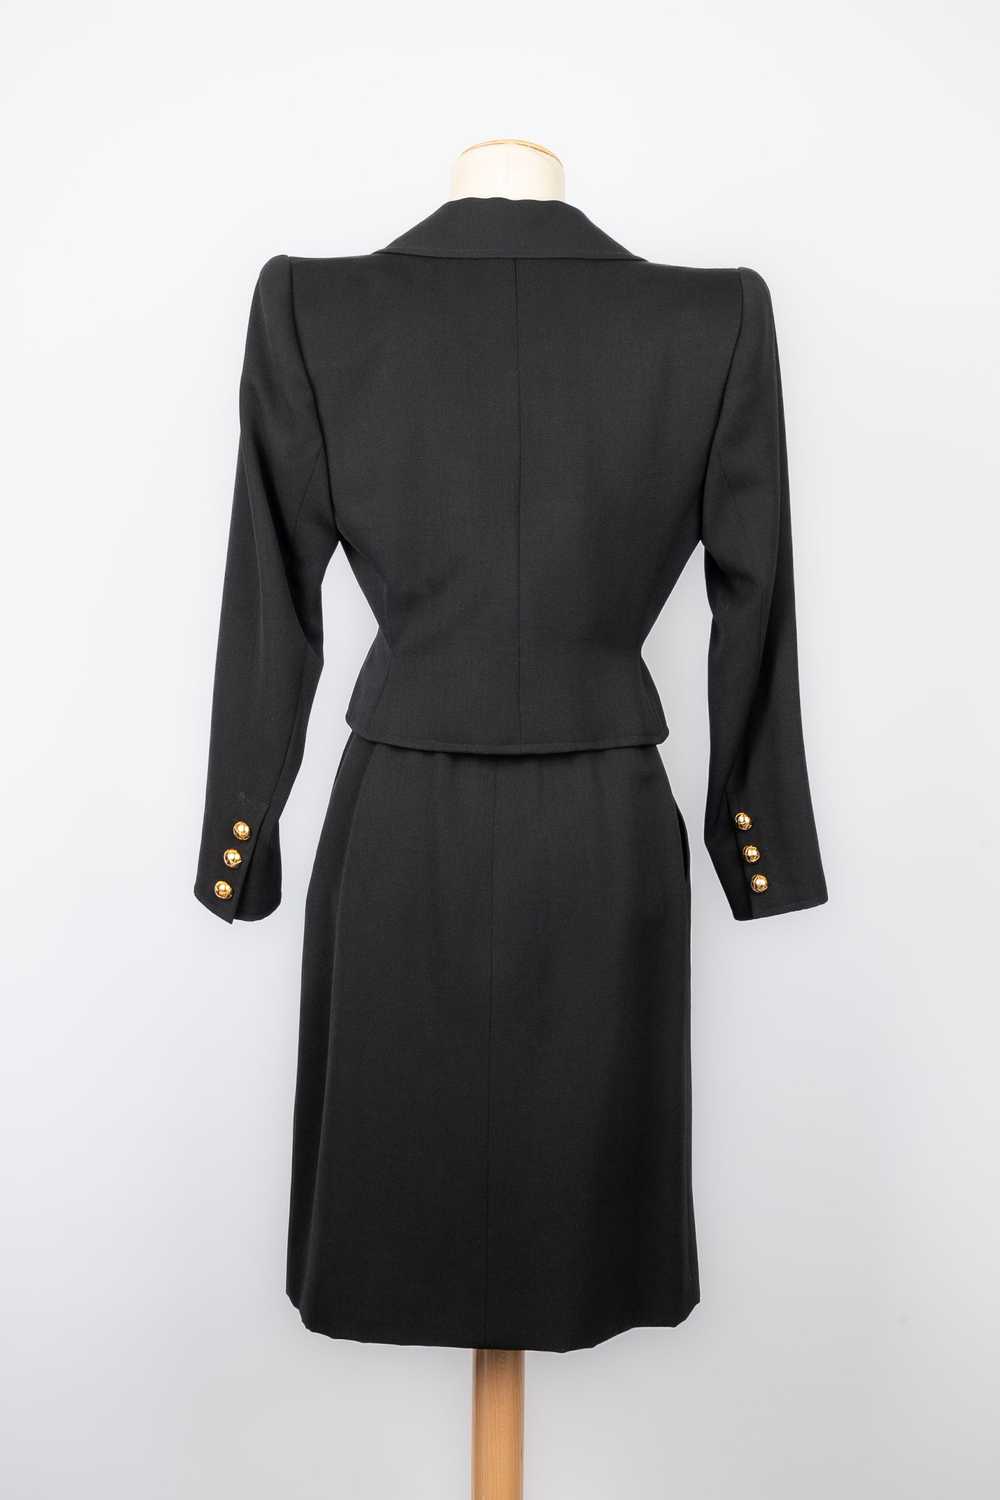 Yves saint Laurent suit Haute Couture - image 3